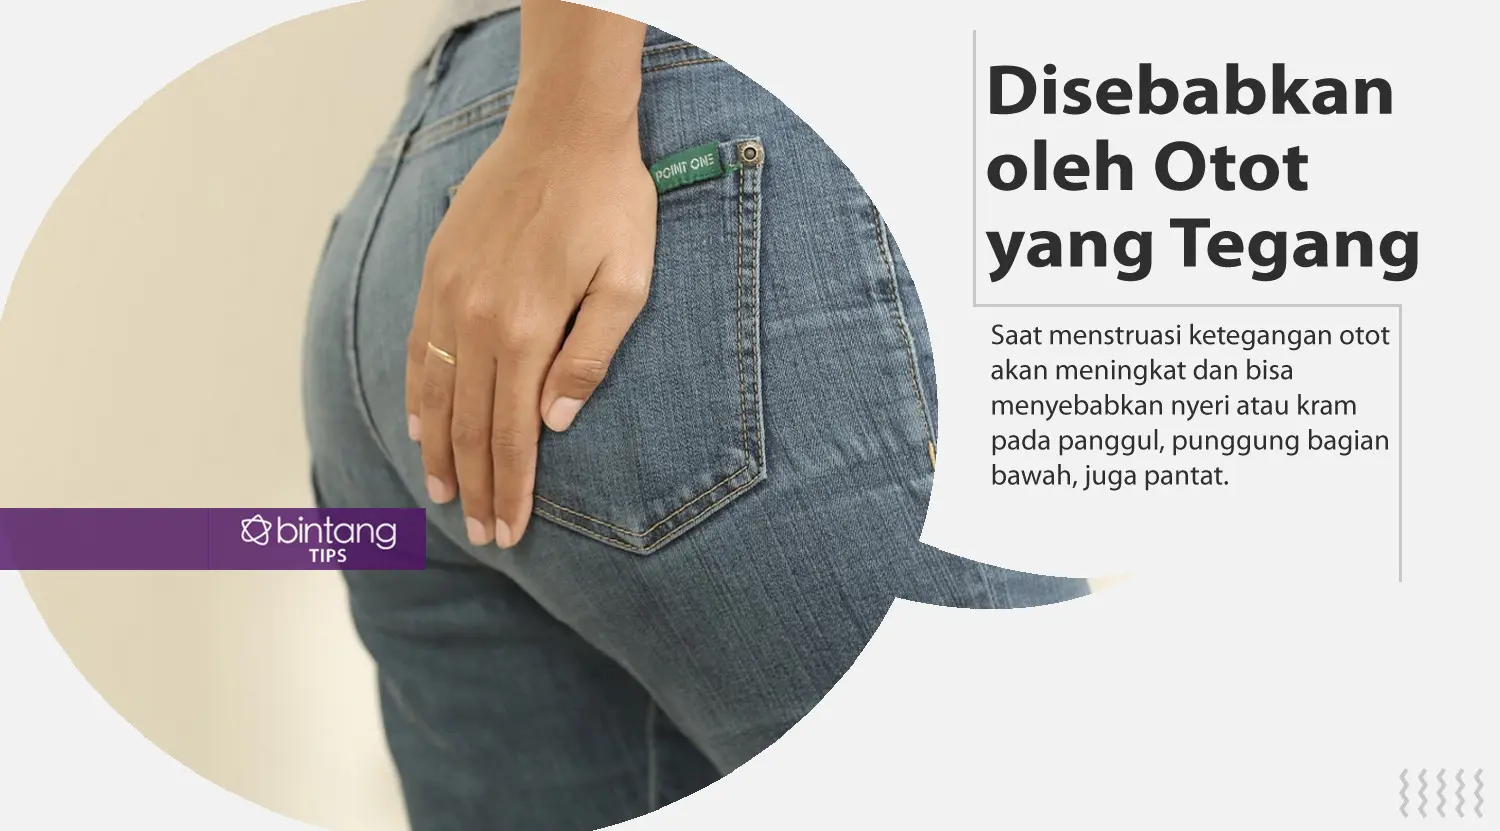 Fakta dibalik rasa sakit saat menstruasi. (Foto: Daniel Kampua, Digital Imaging: Nurman Abdul Hakim/Bintang.com)